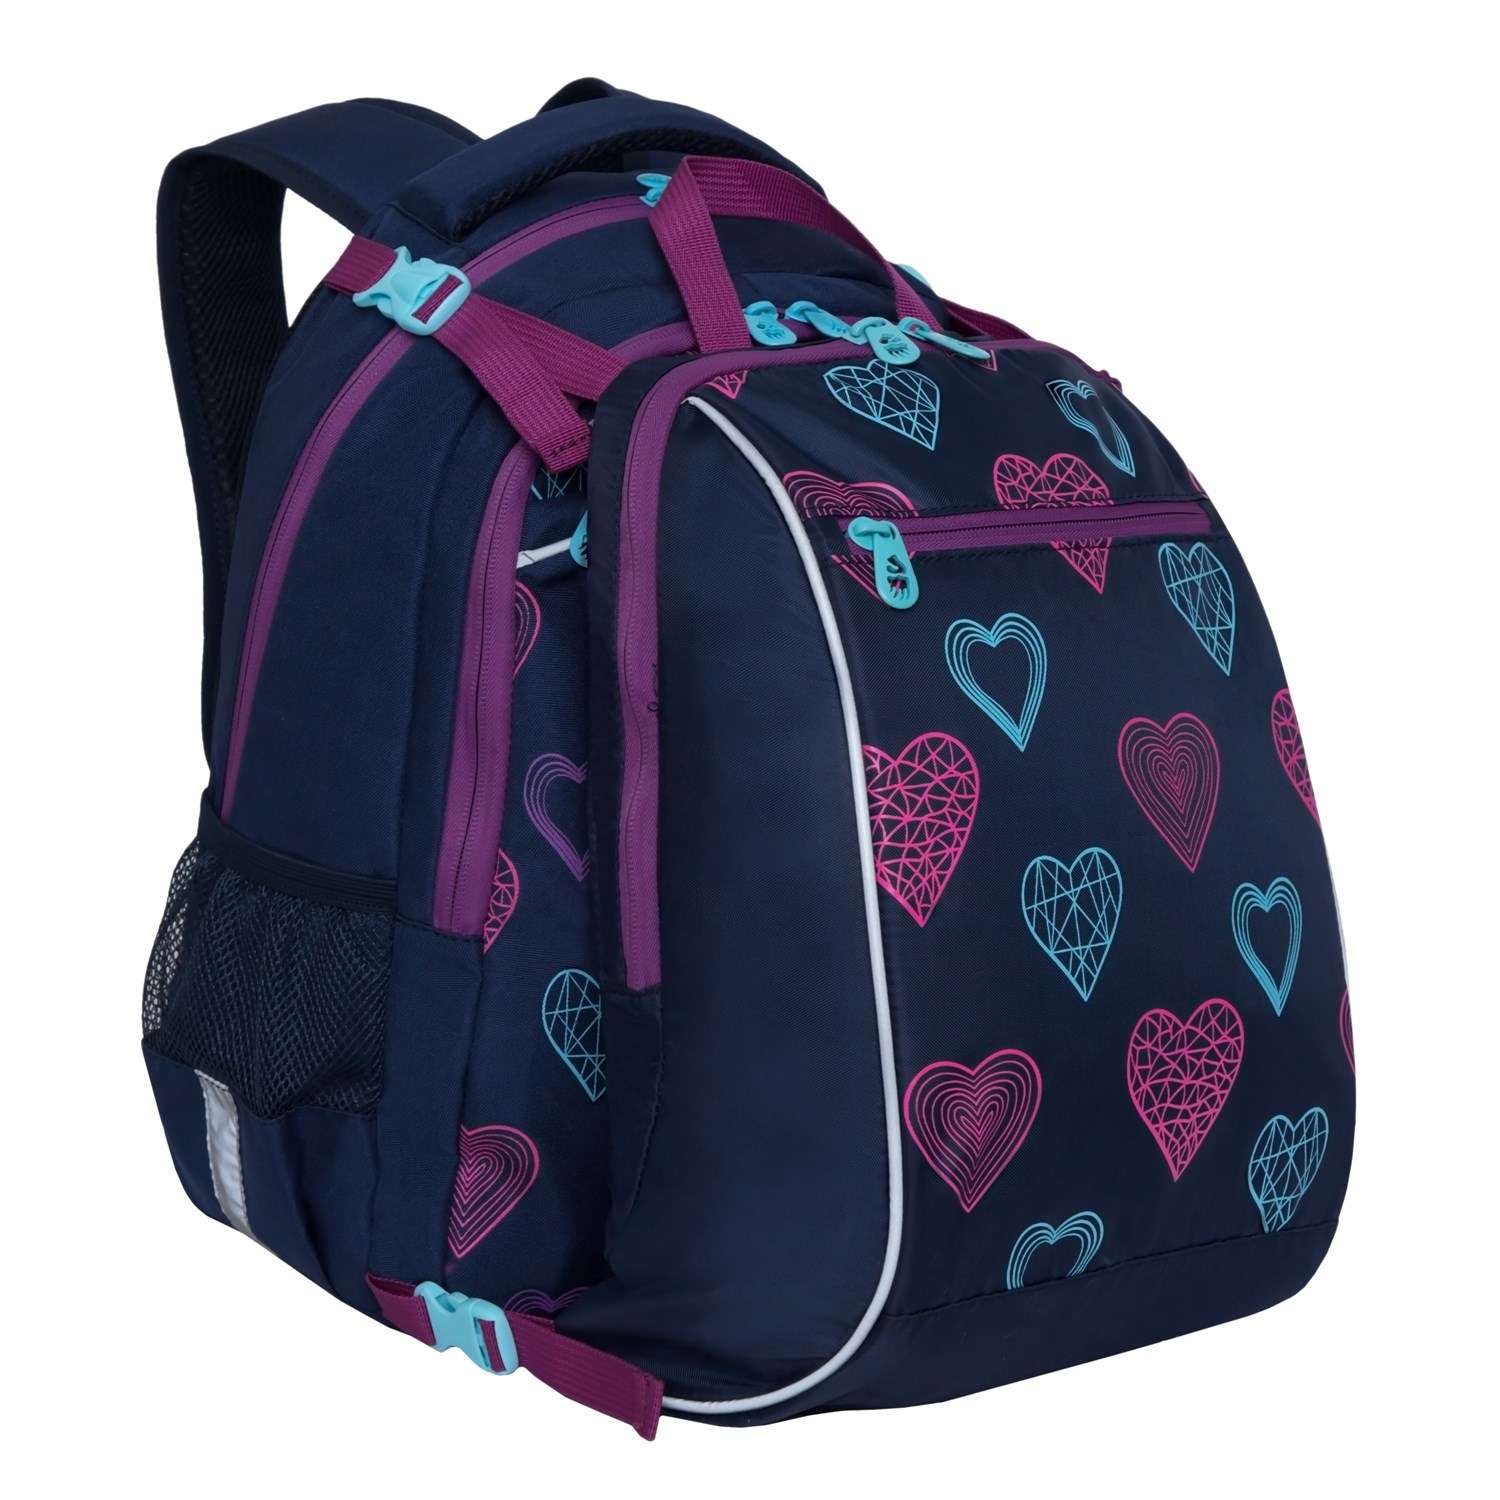 Рюкзак школьный Grizzly с мешком RG-064-11/1 - фото 1